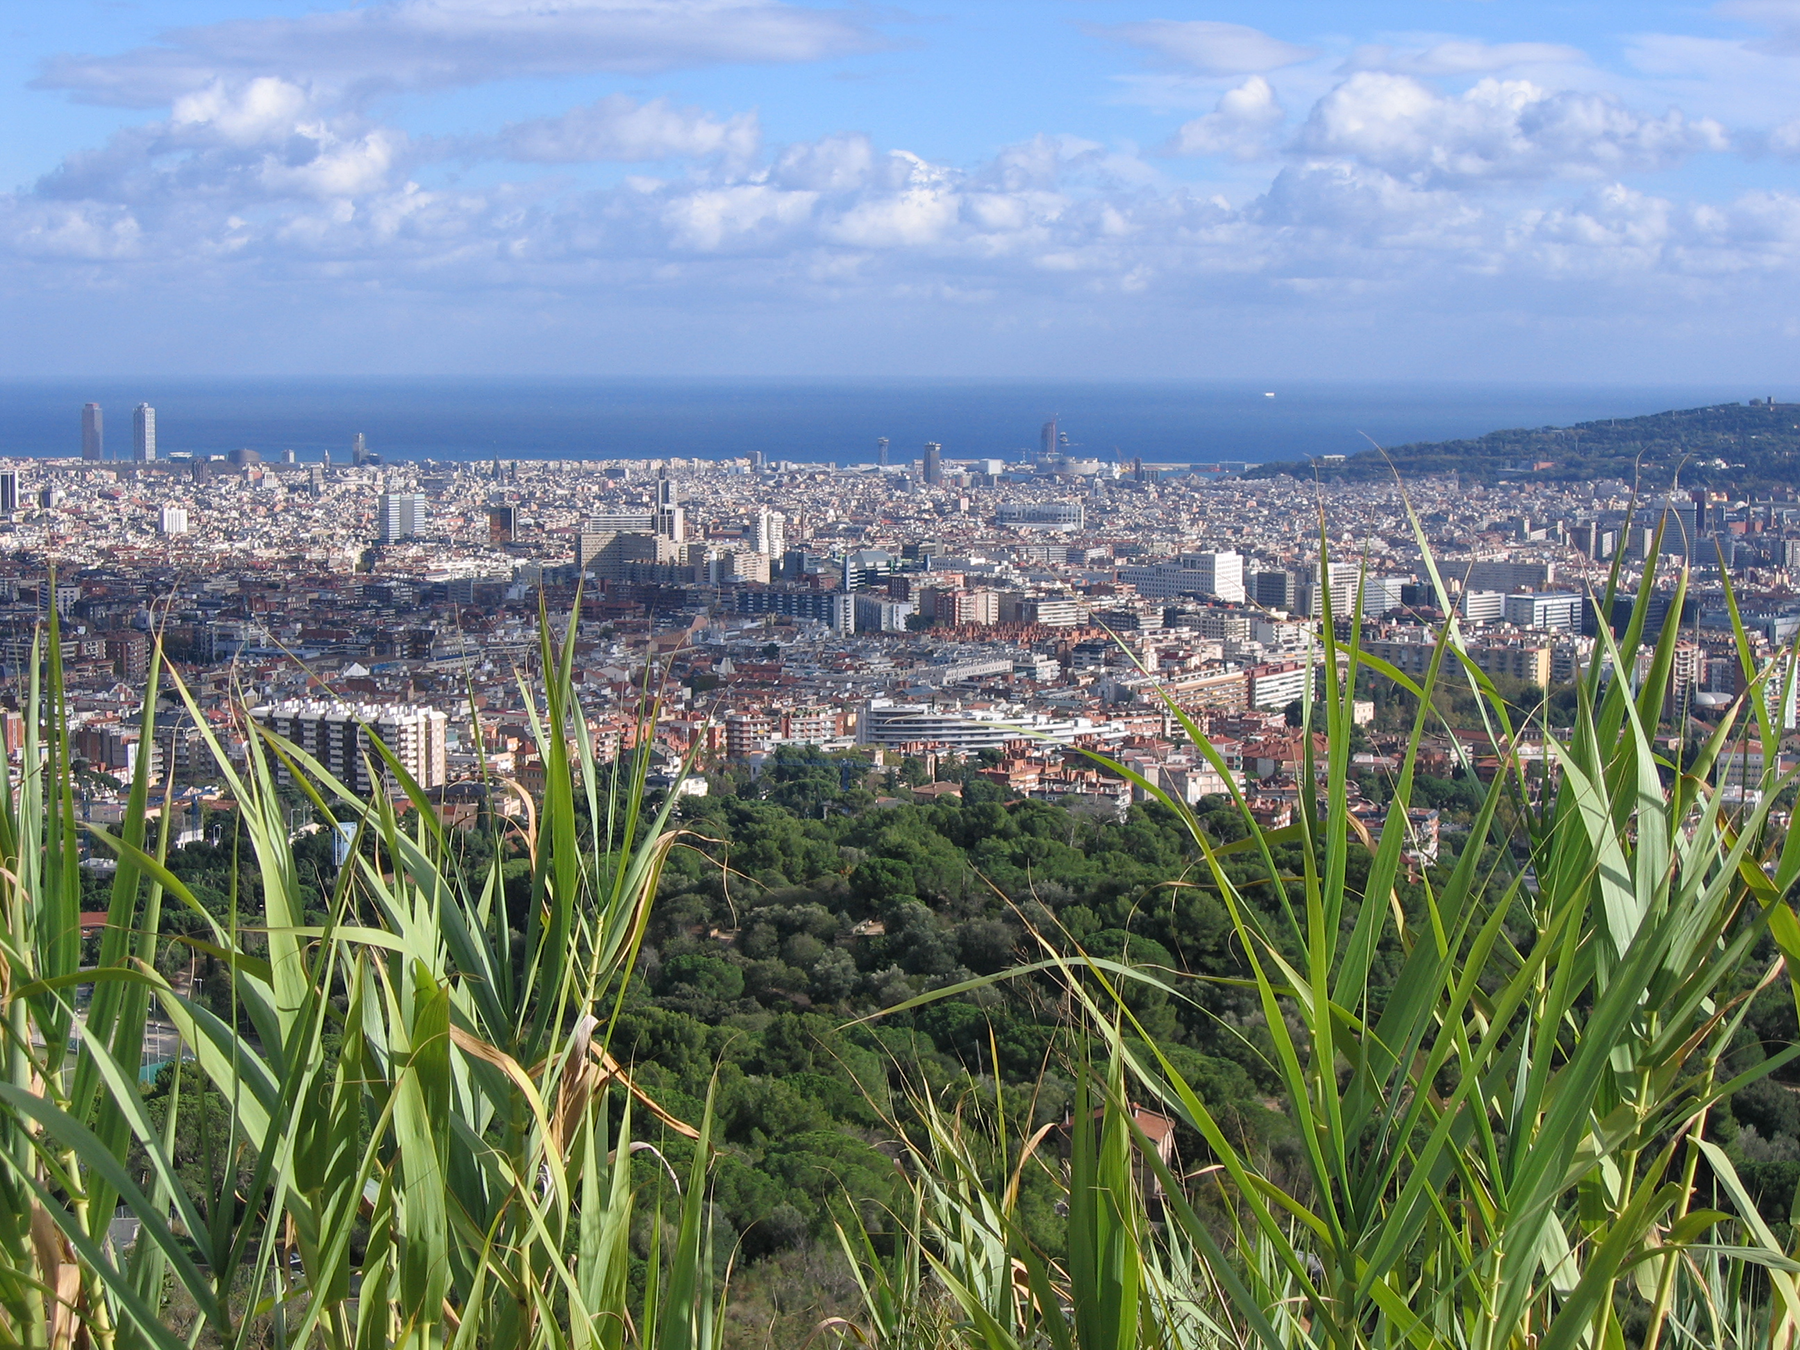 Vue du Cami de les Aigues de Collserola sur Barcelone